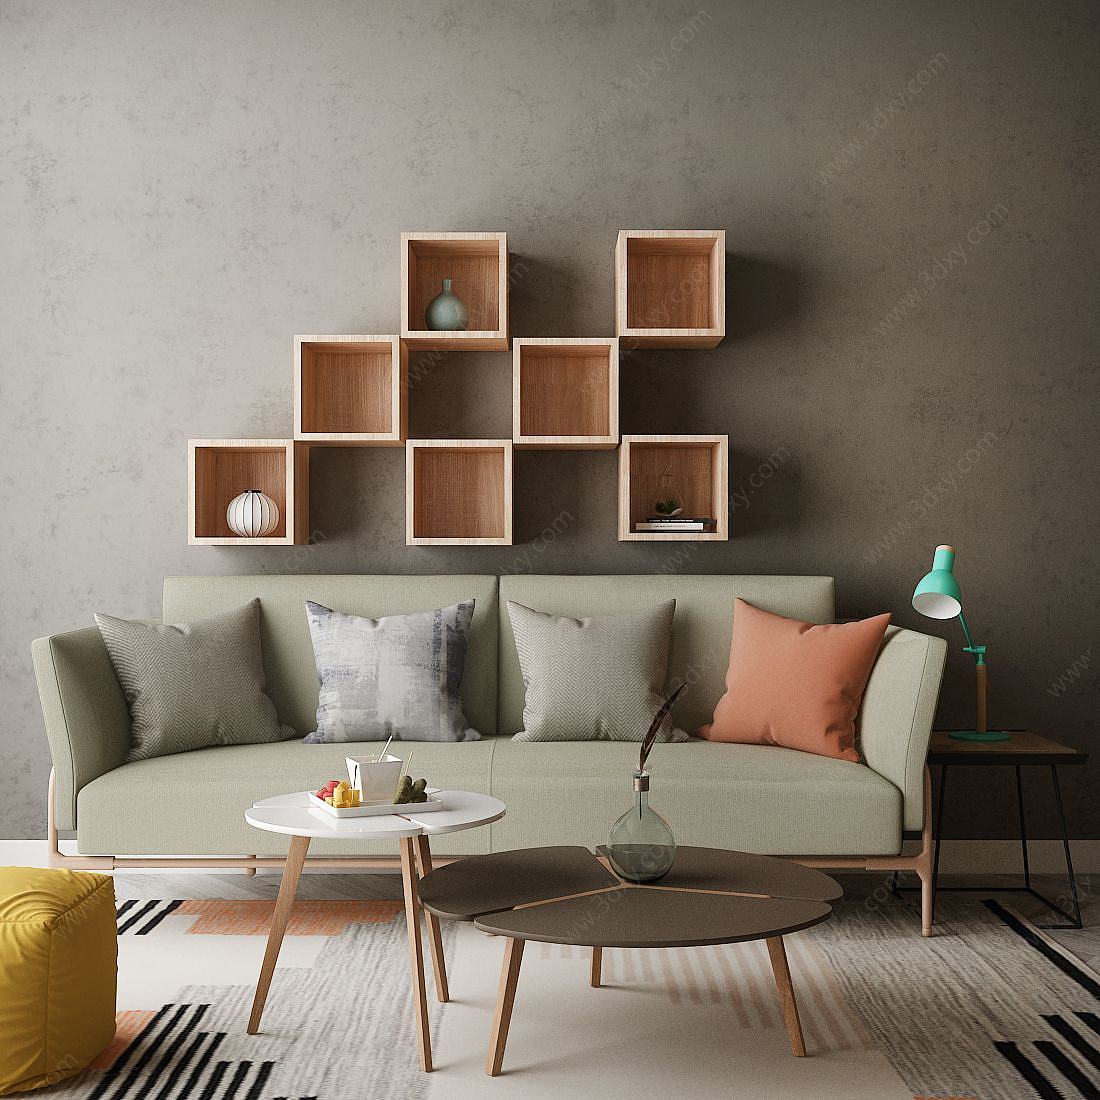 家具饰品组合休闲沙发3D模型